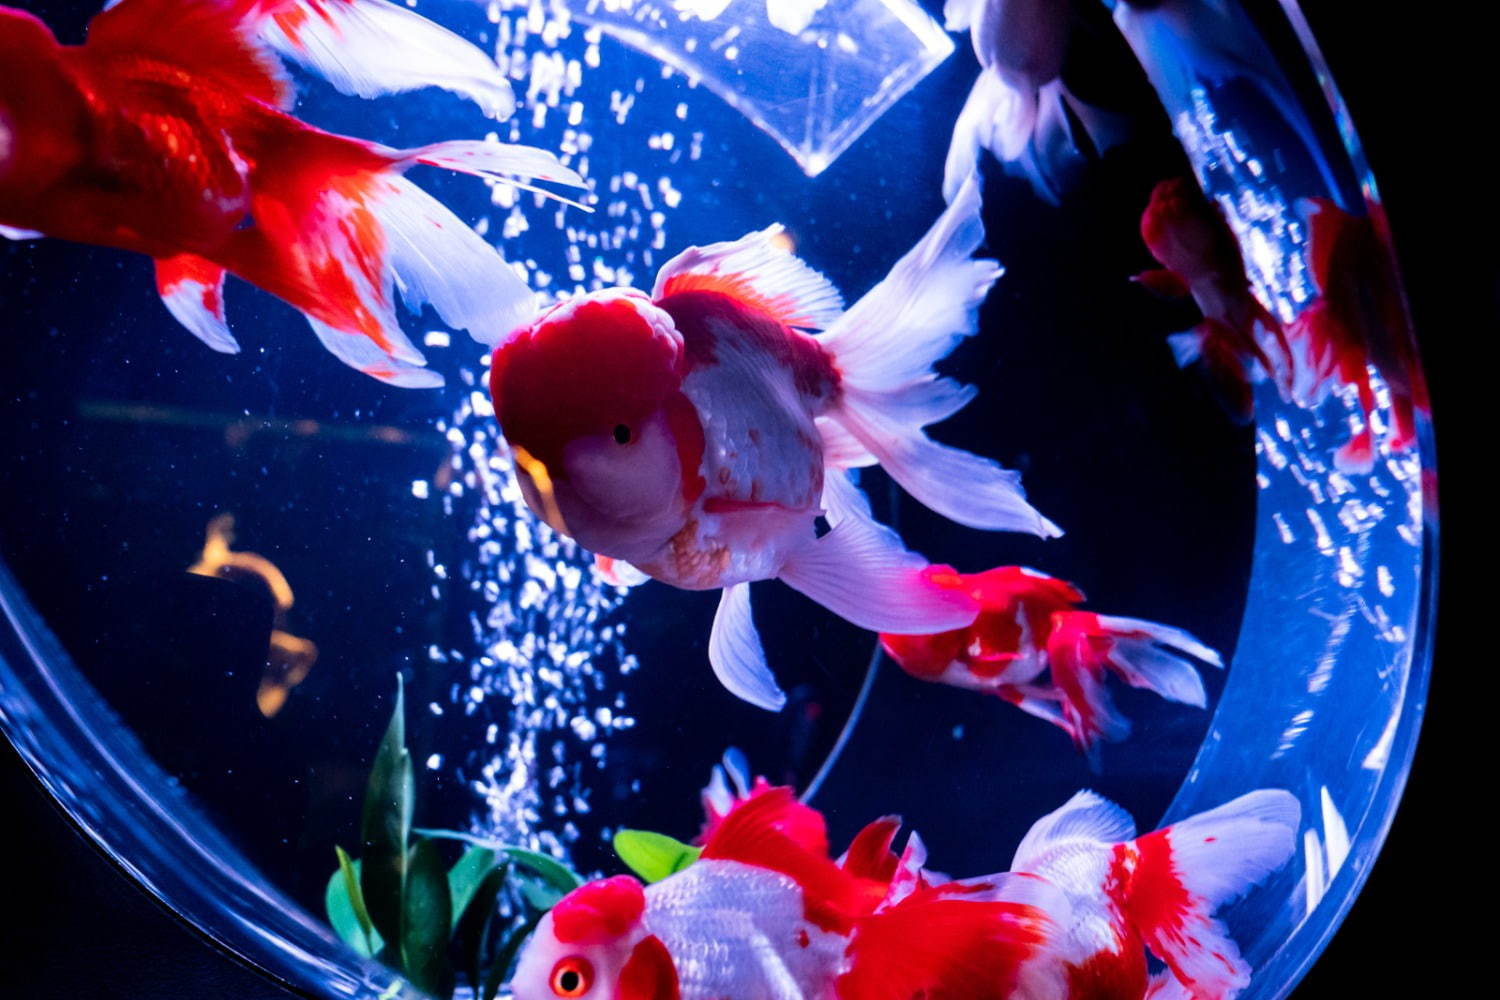 アートアクアリウム美術館 東京 日本橋に誕生 過去最大30 000匹超の金魚が泳ぐアート空間 ファッションプレス